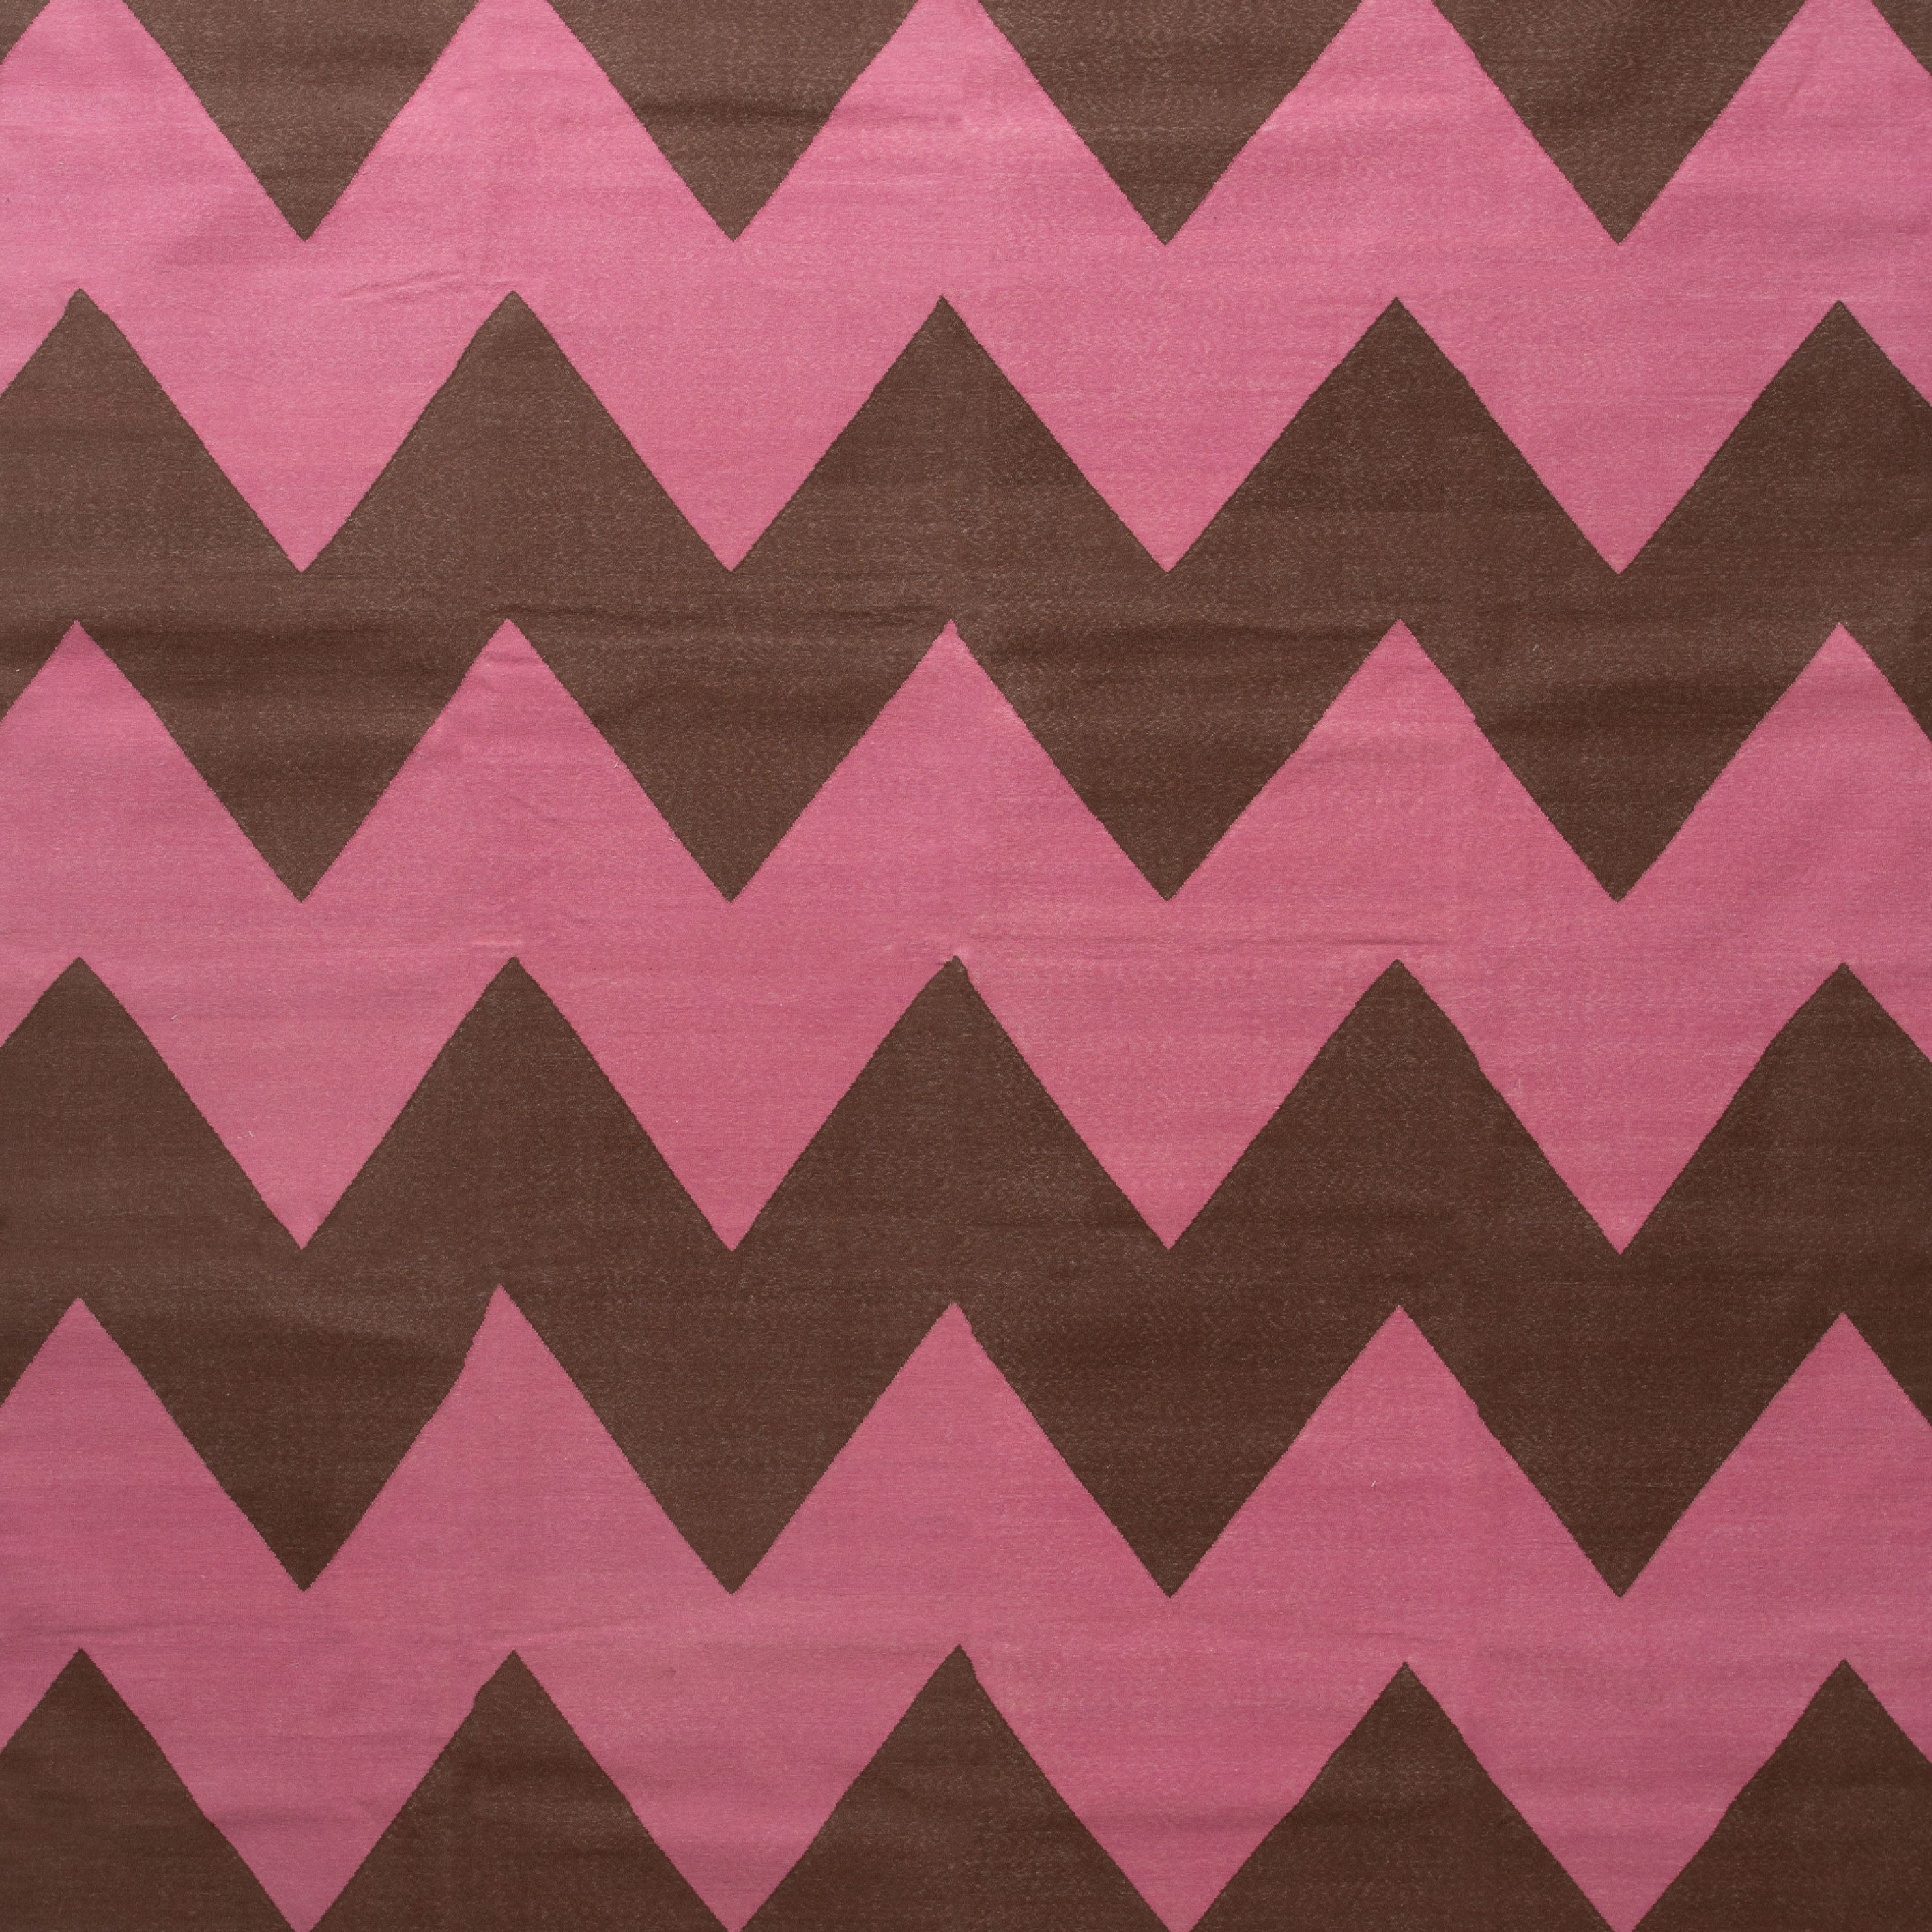 Pink Flatweave Wool Rug - 8'1" x 11'1" Default Title